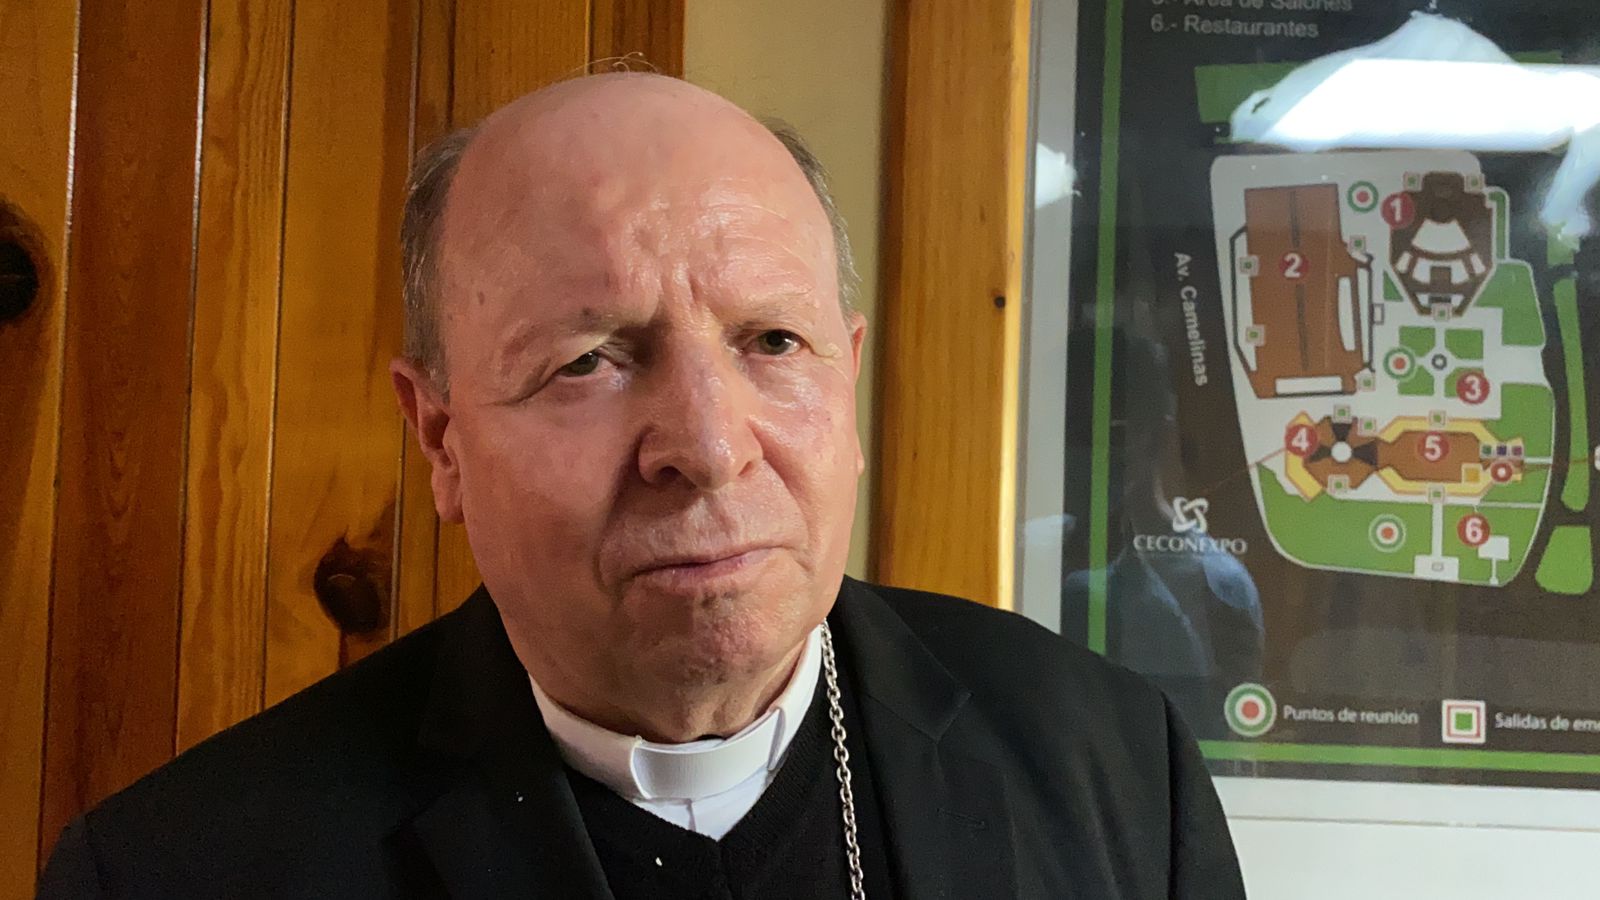 Empeora situación de violencia en Tierra Caliente obispo